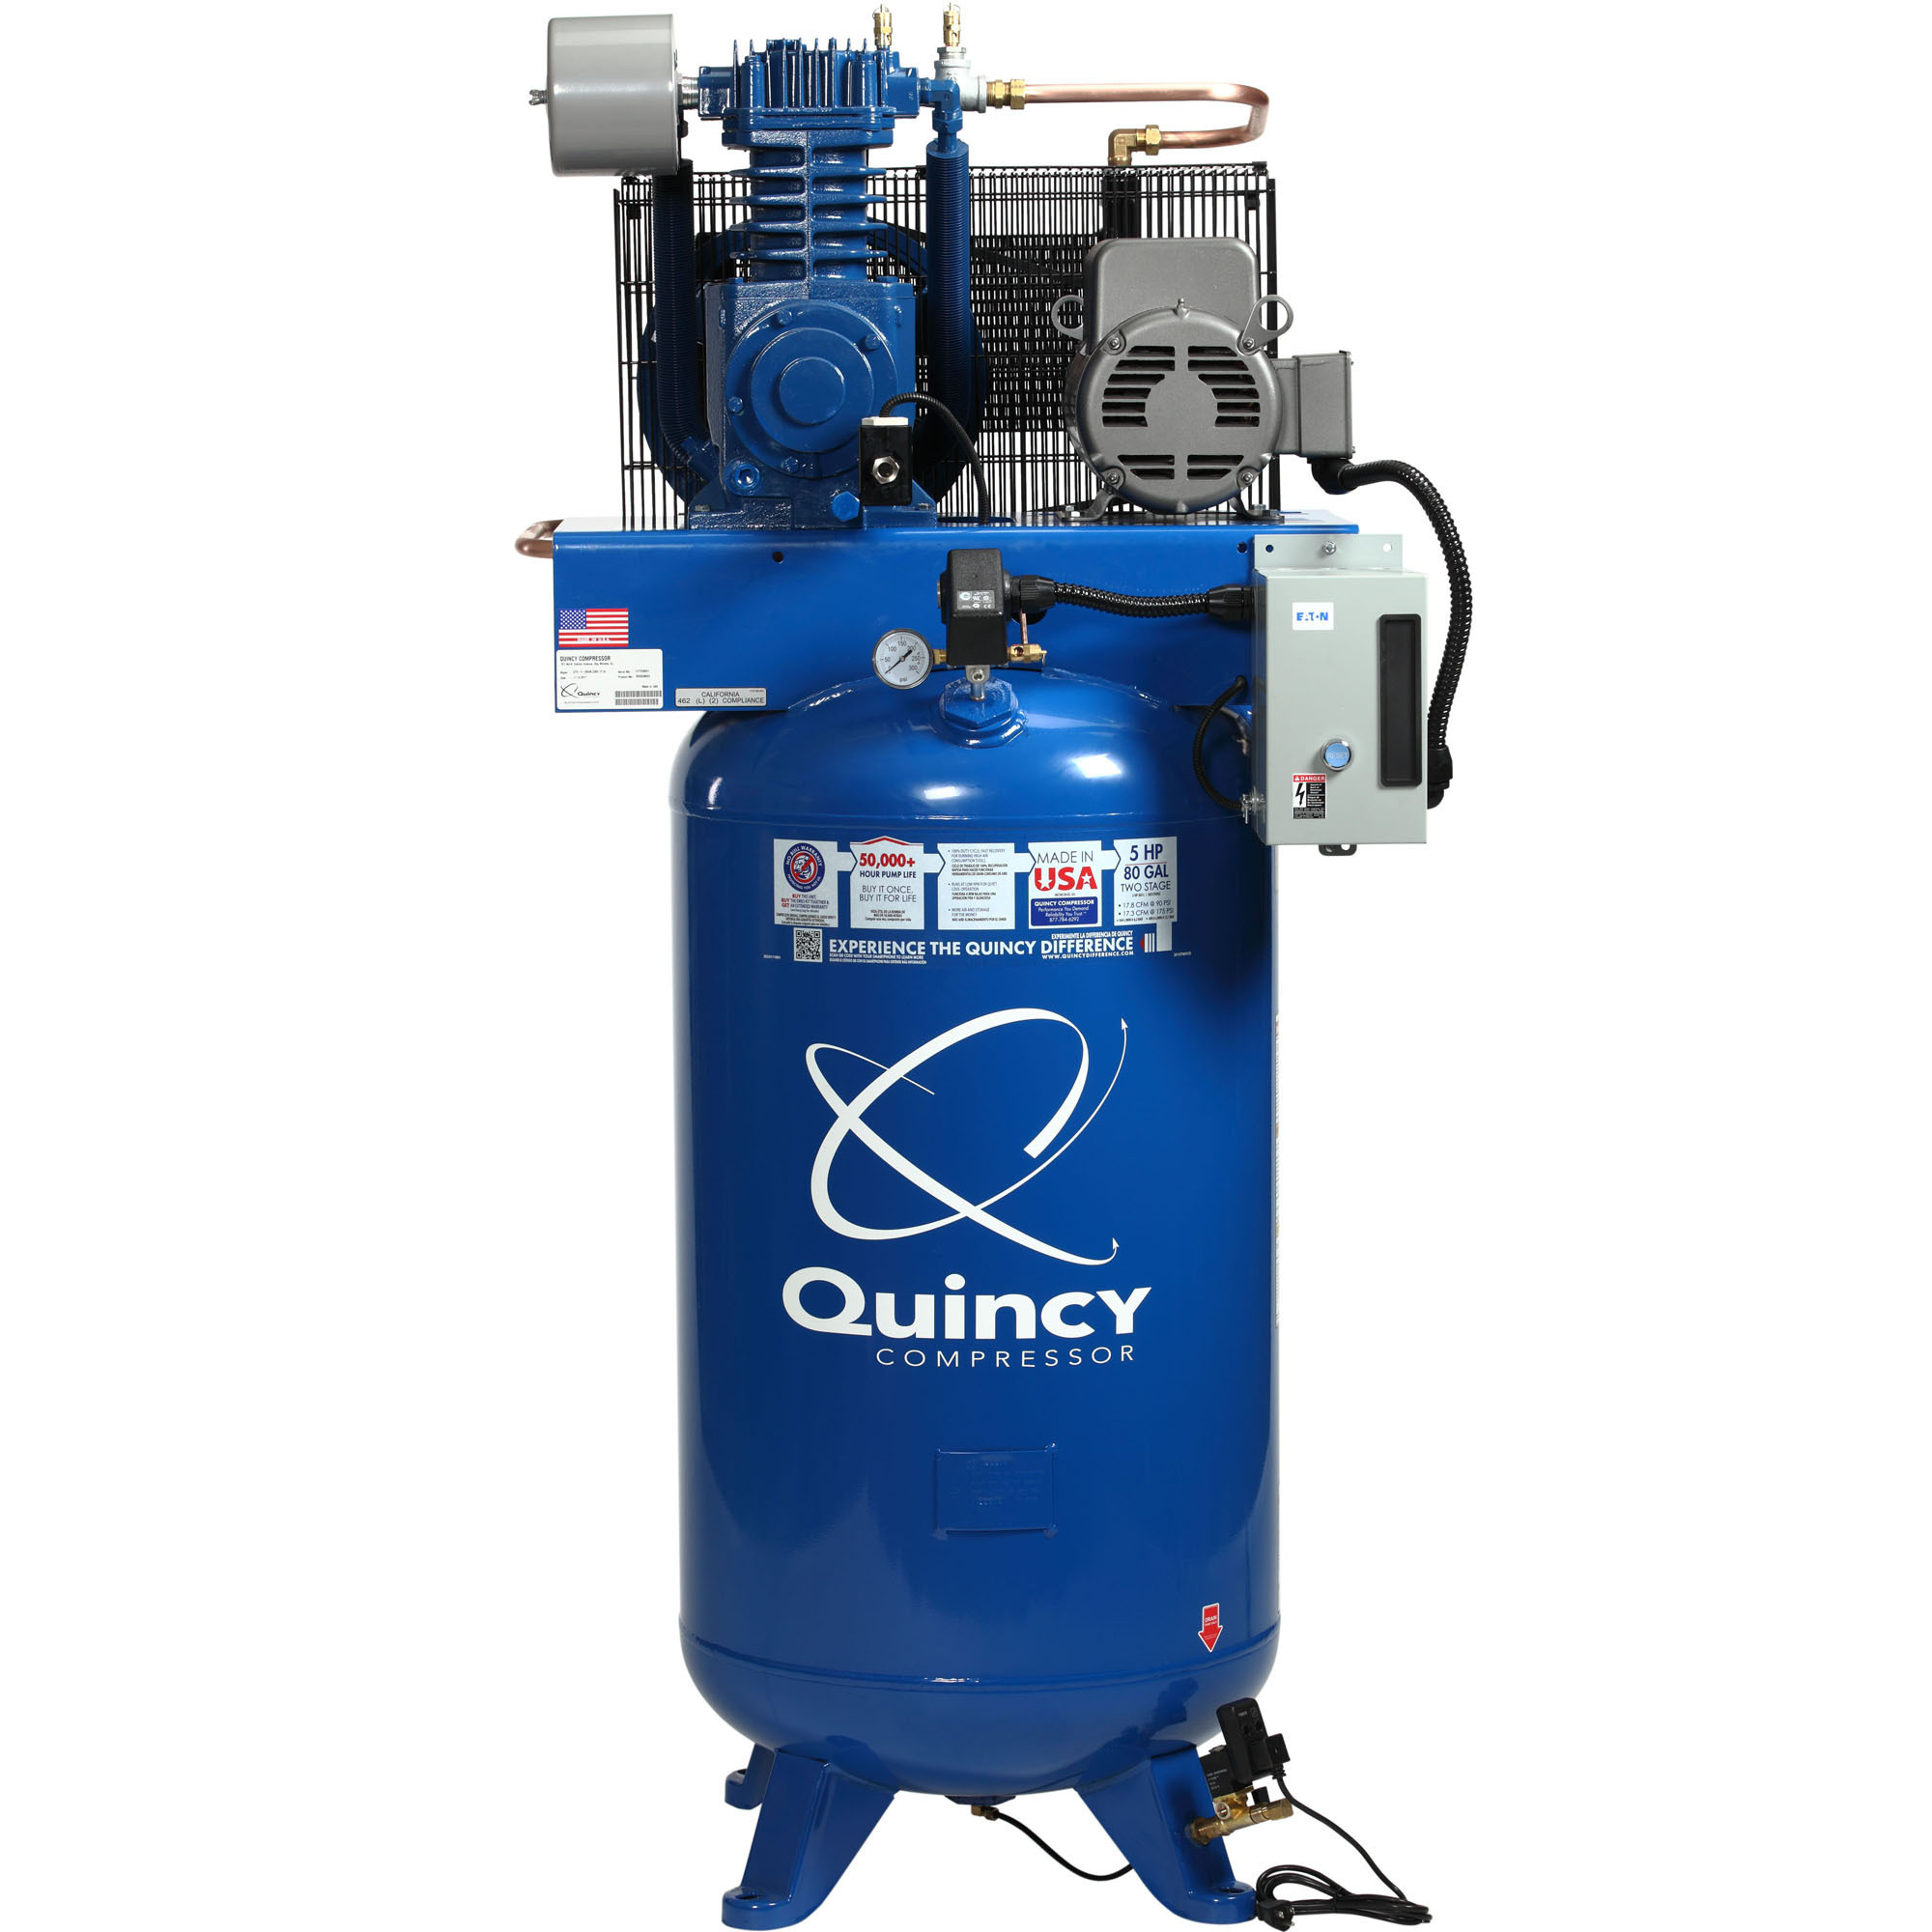 Quincy Compressor 2020040713